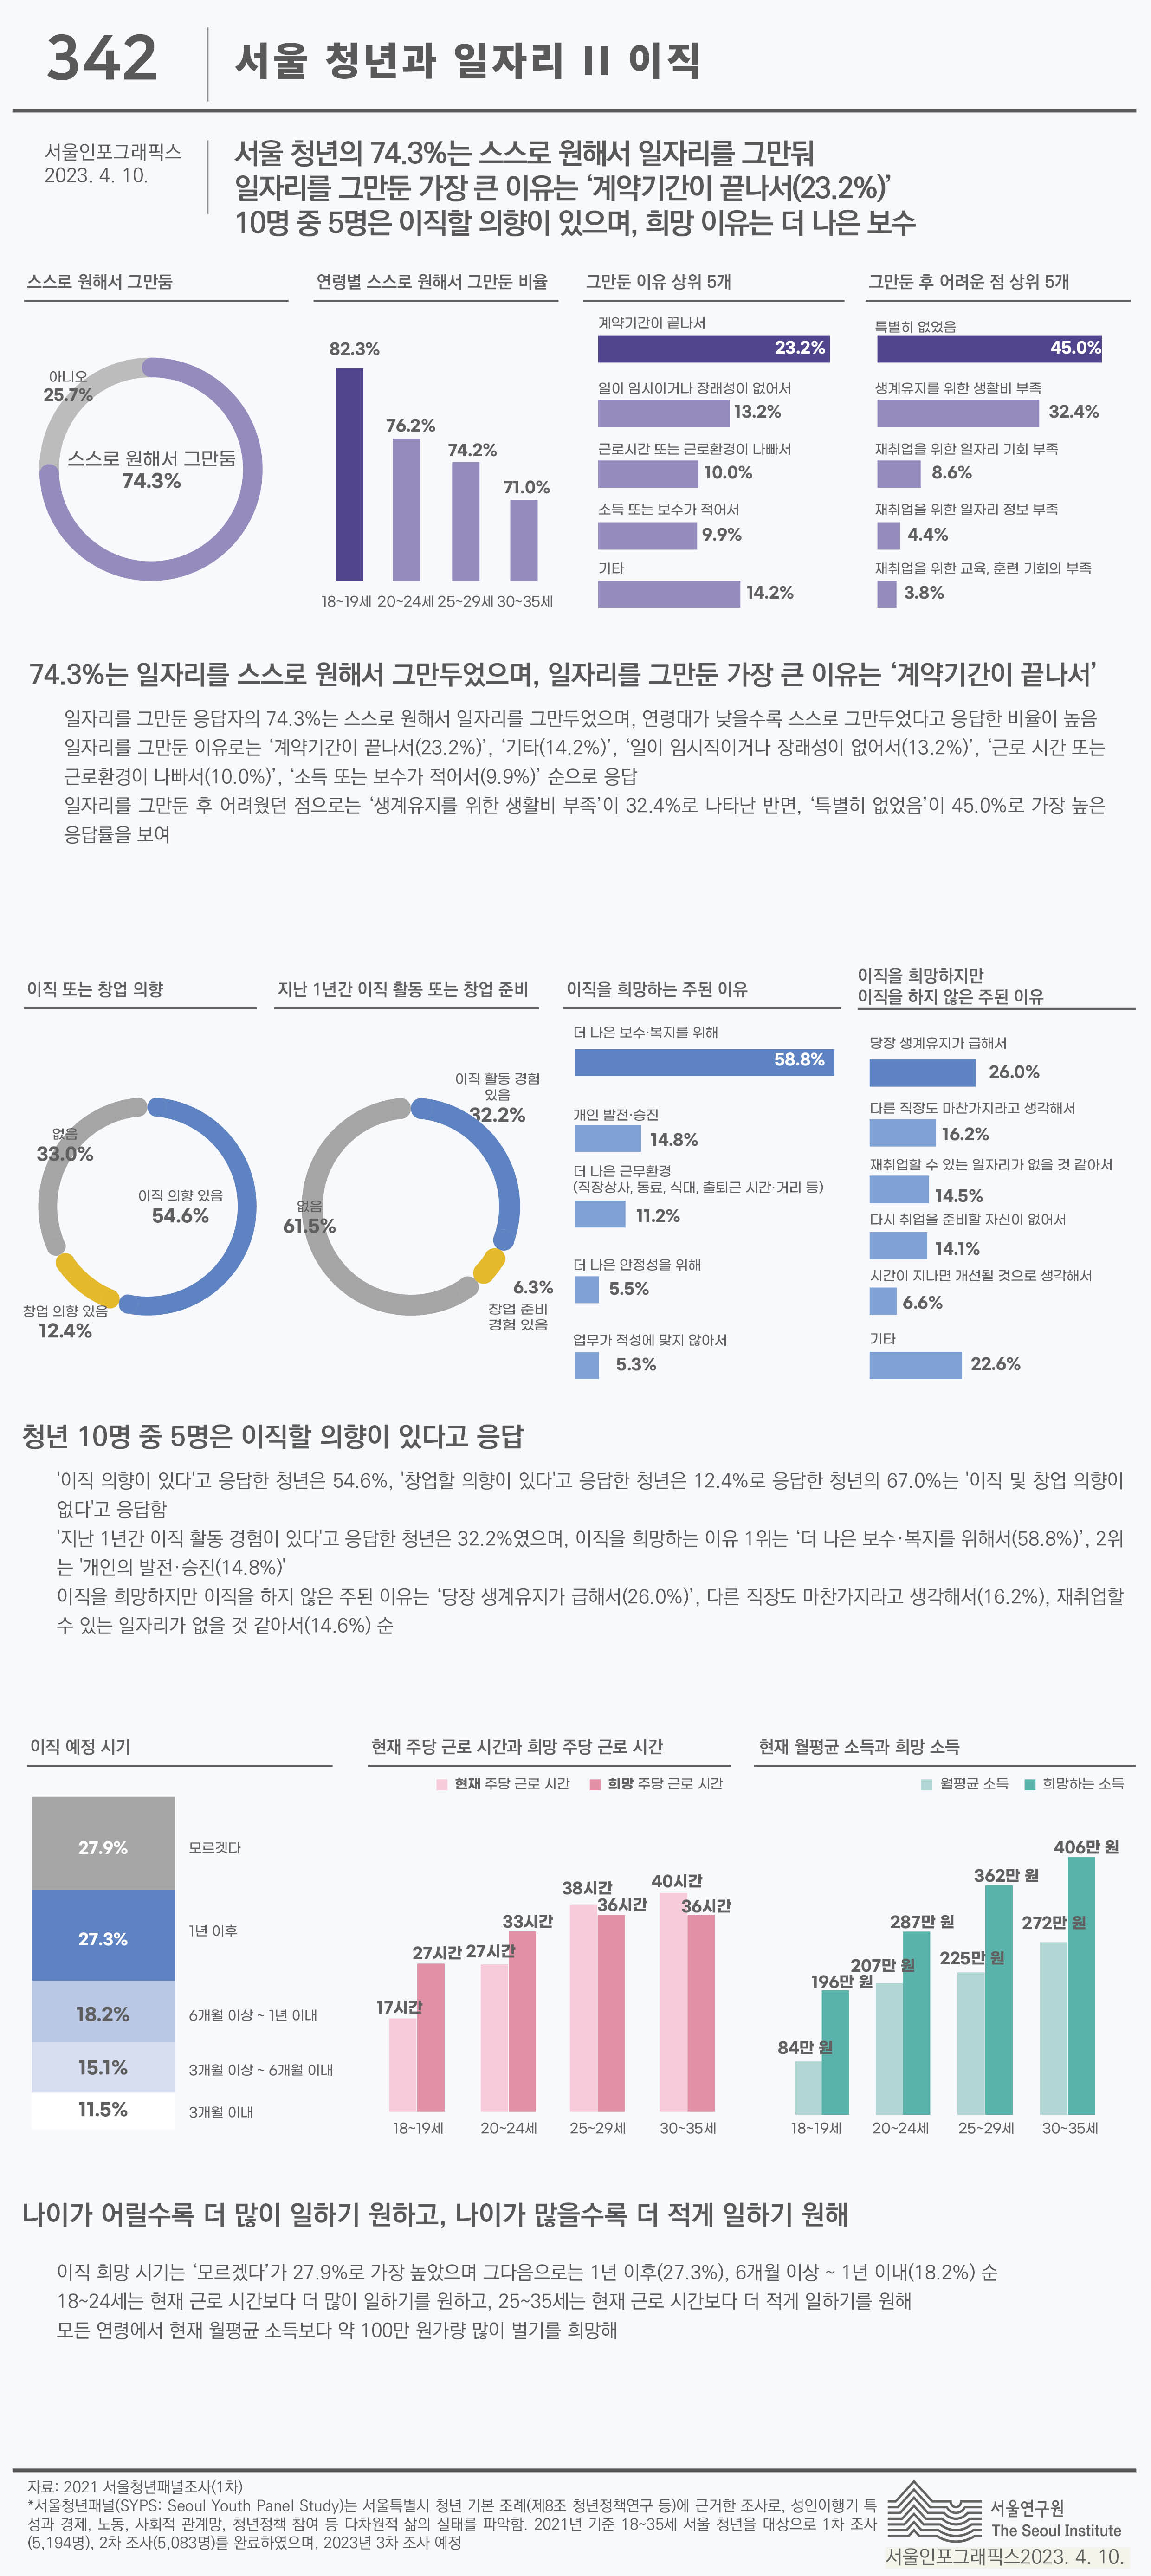 서울청년과 일자리 2 이직 서울인포그래픽스 제342호 2023년 4월 10일 서울 청년의 74.3%는 스스로 원해서 일자리를 그만뒀으며,일자리를 그만둔 가장 큰 이유는 ‘계약기간이 끝나서(23.2%)’. 10명 중 5명은 이직할 의향이 있으며, 희망 이유는 더 나은 보수로 정리될 수 있습니다. 인포그래픽으로 제공되는 그래픽은 하단에 표로 자세히 제공됩니다.